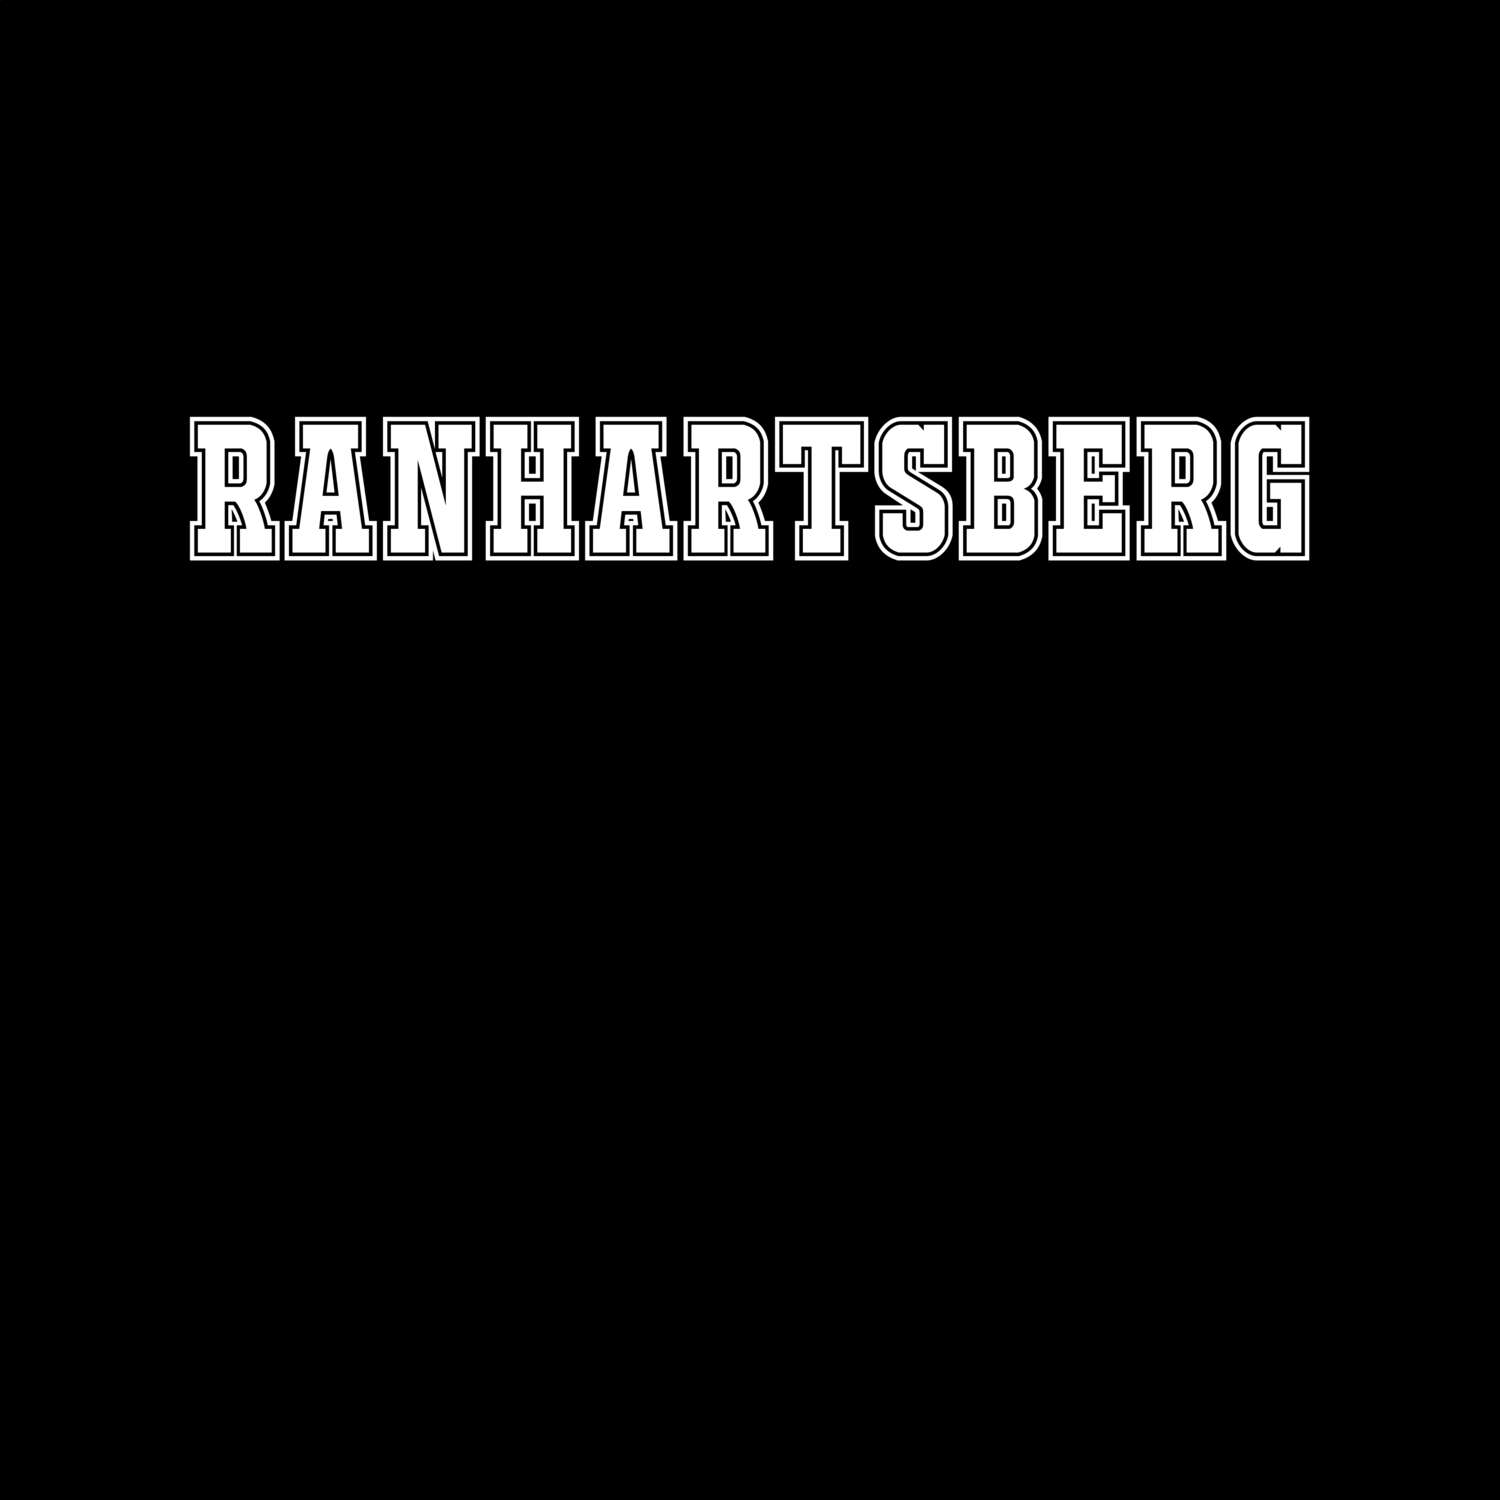 Ranhartsberg T-Shirt »Classic«